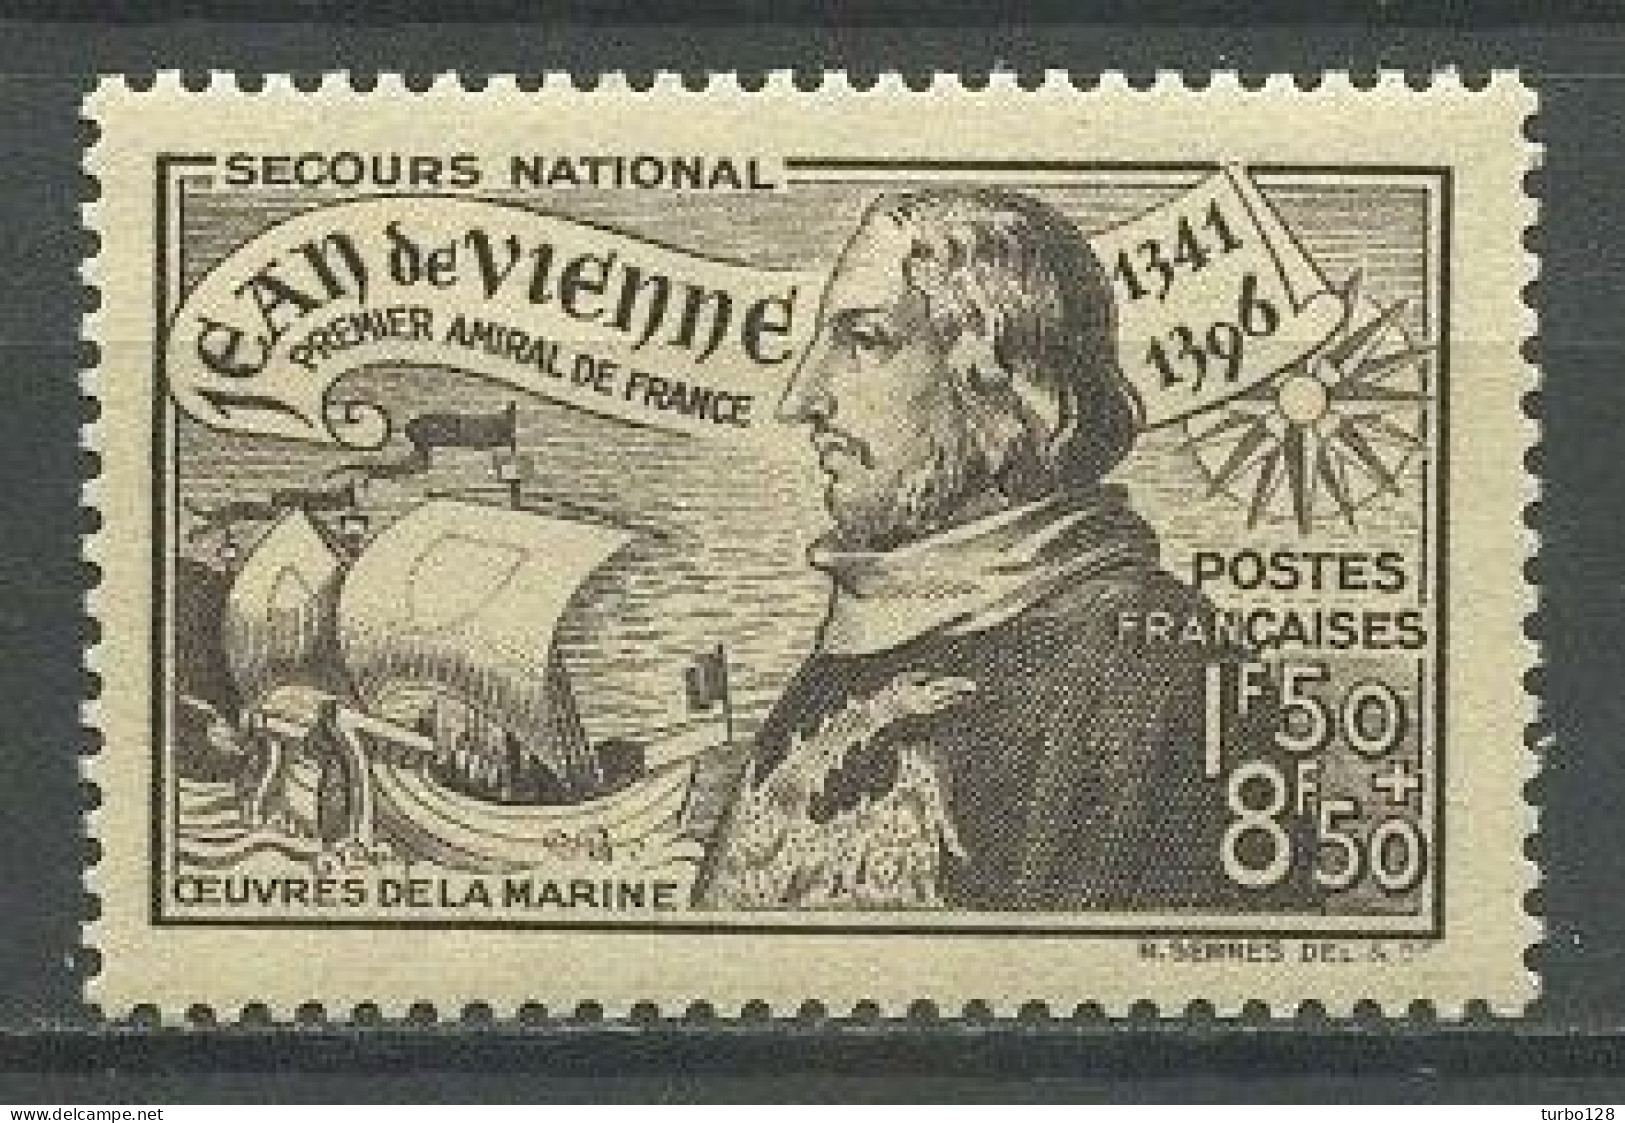 FRANCE 1942 N° 544 ** Neuf MNH Superbe C 1.40 € Jean De Vienne Amiral De France Bateaux Voiliers Sailboats Maritime - Unused Stamps